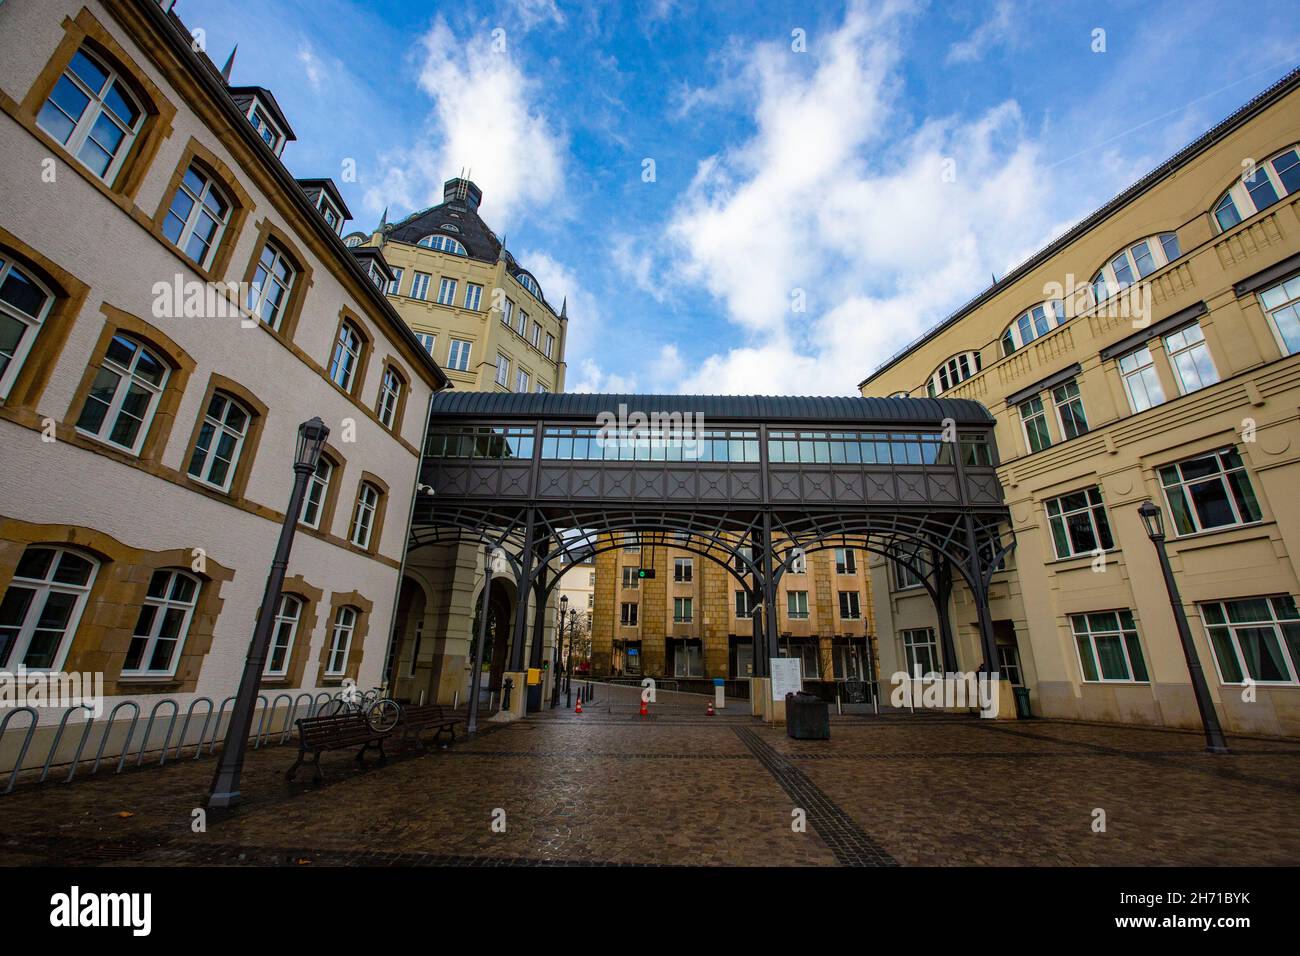 Palacio de Justicia, Plateau du Saint Esprit, la ciudad de Luxemburgo, Gran Ducado de Luxemburgo Foto de stock